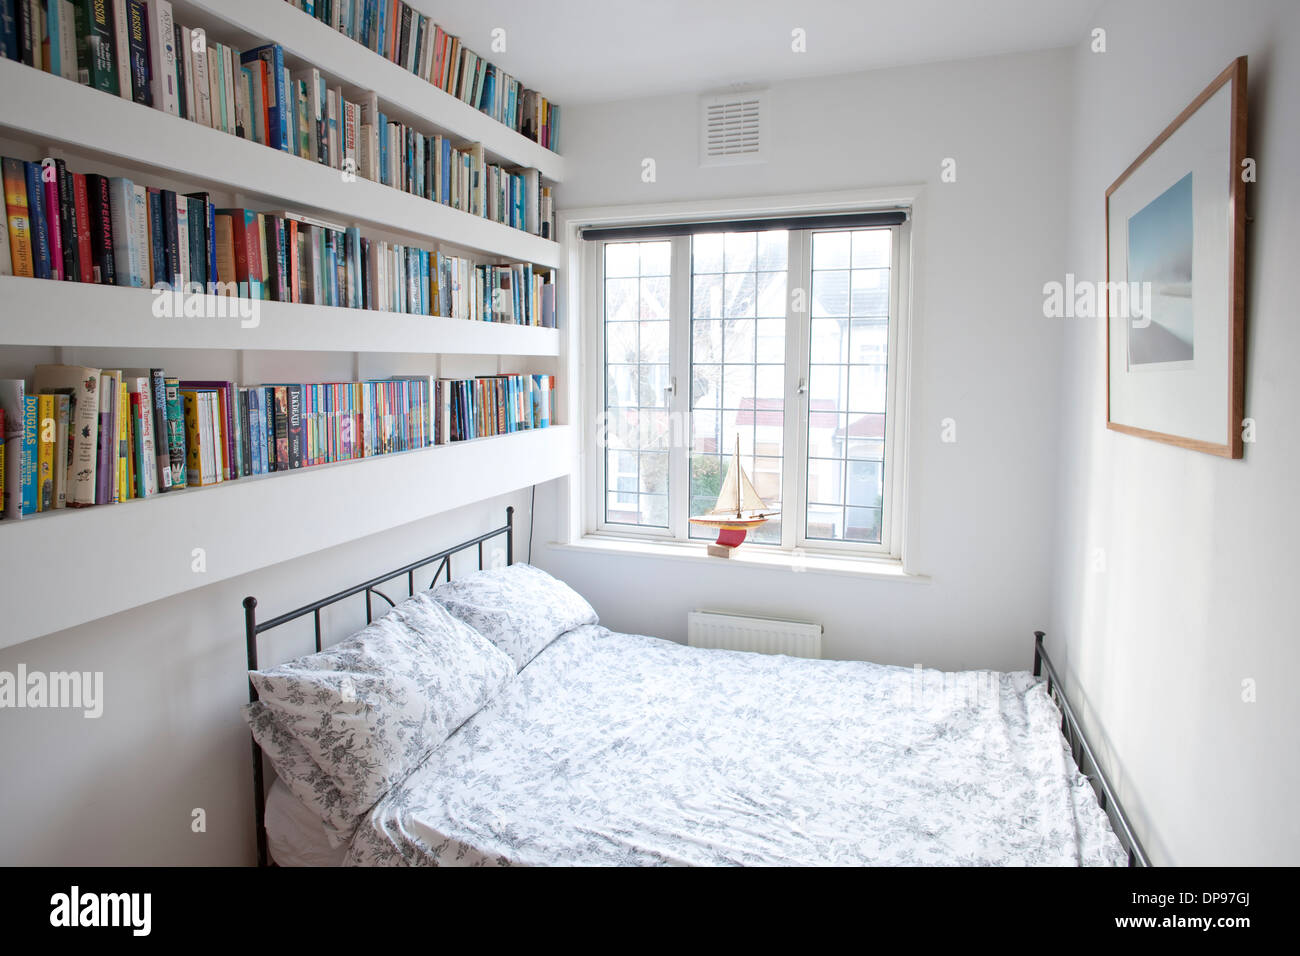 Schlafzimmer Innenraum mit Bücherregalen Stockfoto